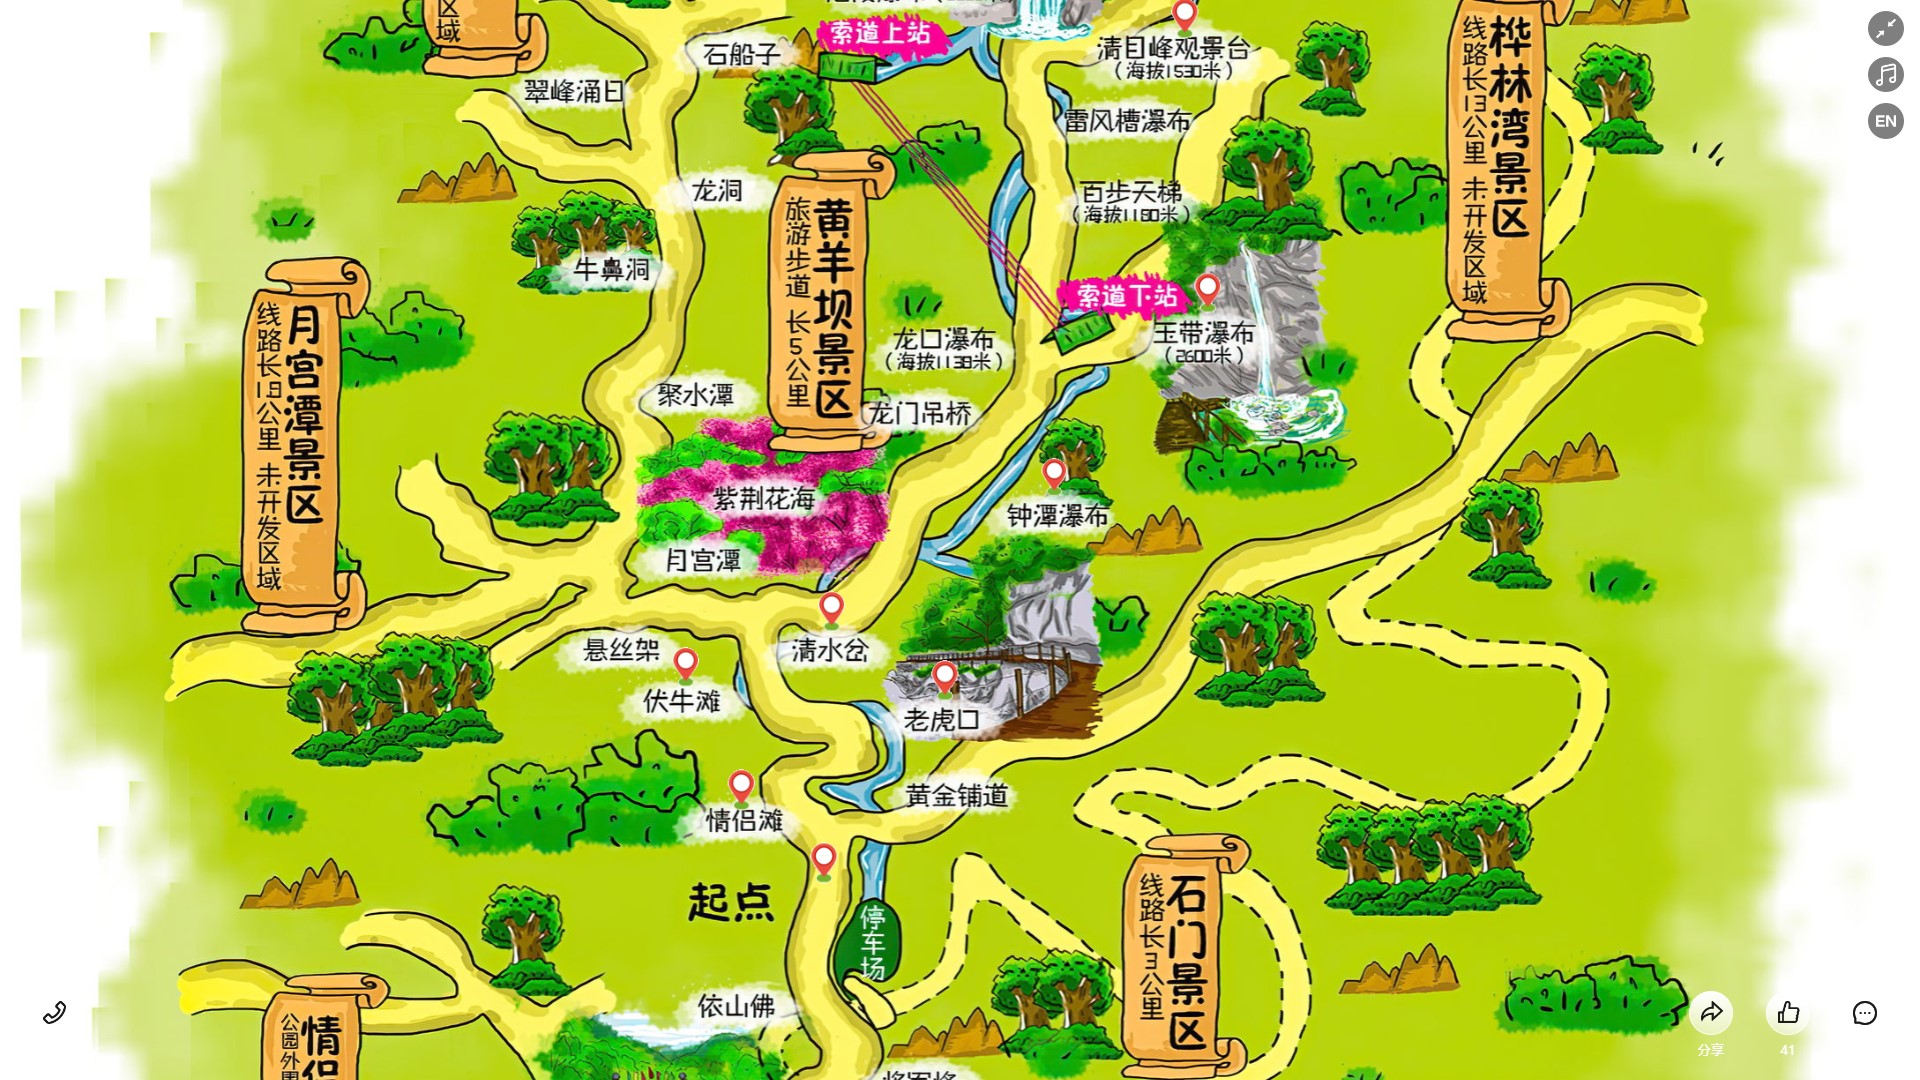 江边乡景区导览系统